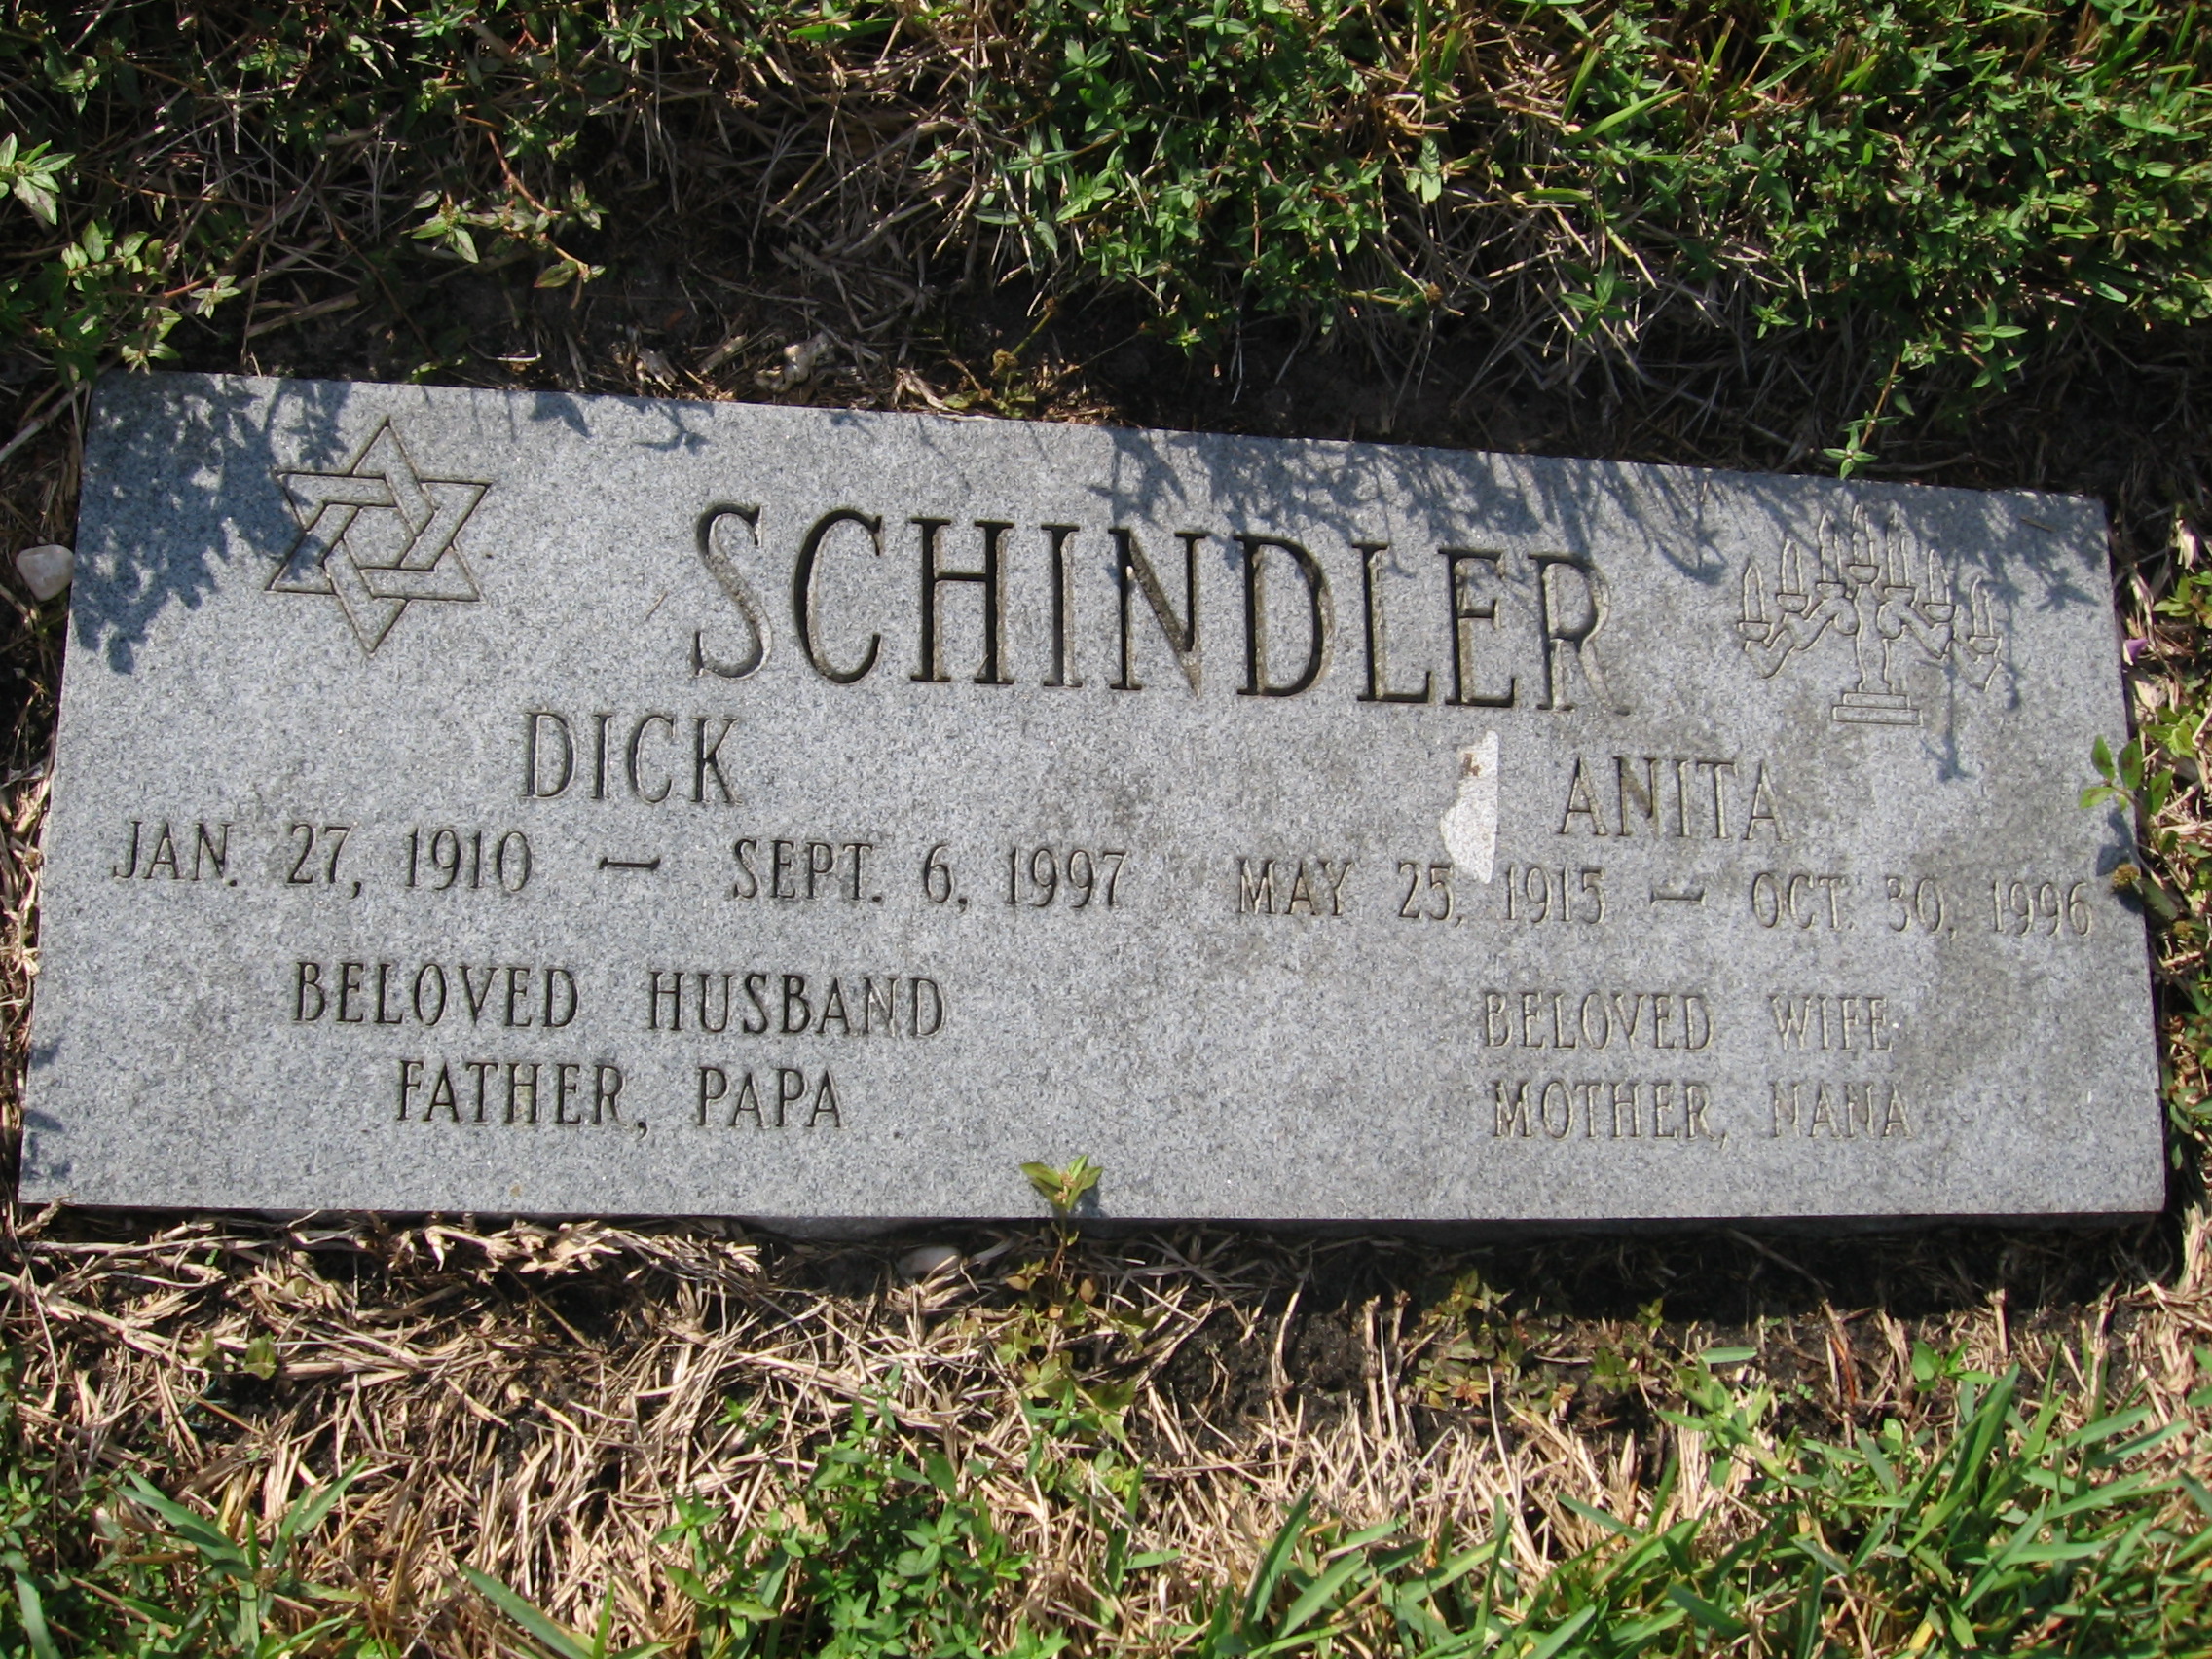 Dick Schindler